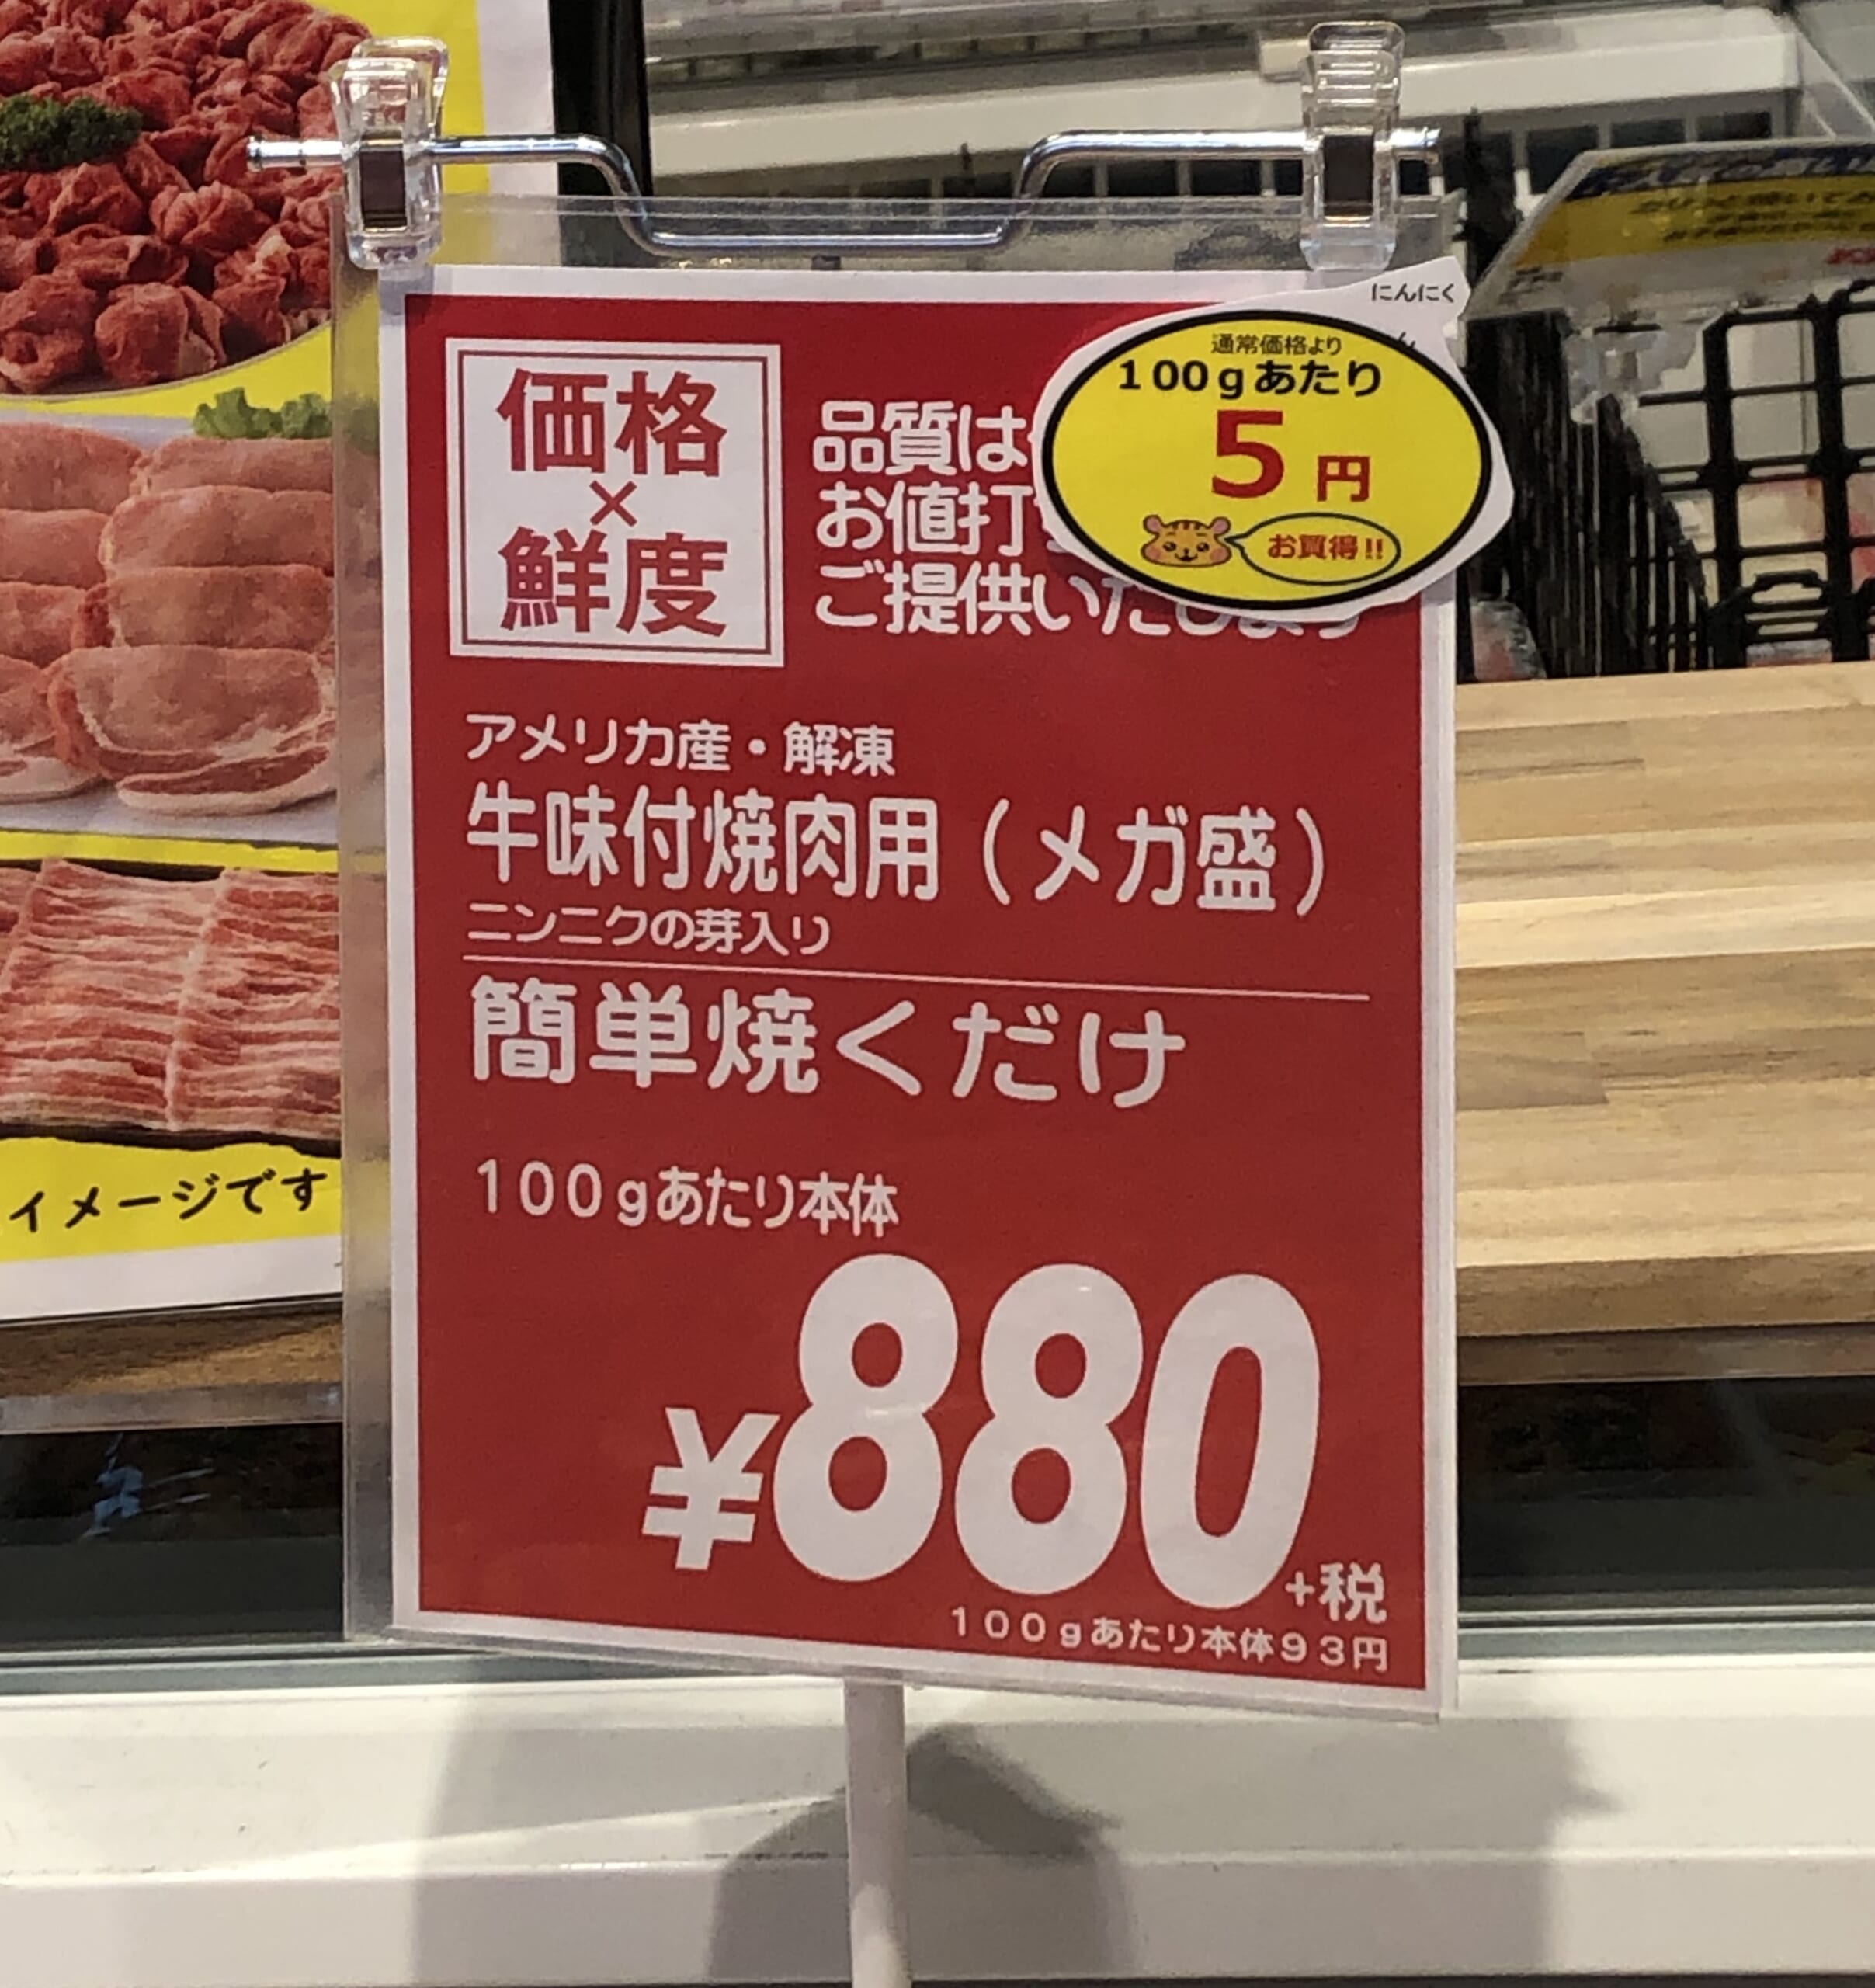 【画像】スーパーで意味がわからない値札見つけたｗｗｗｗｗｗｗｗｗｗｗｗ